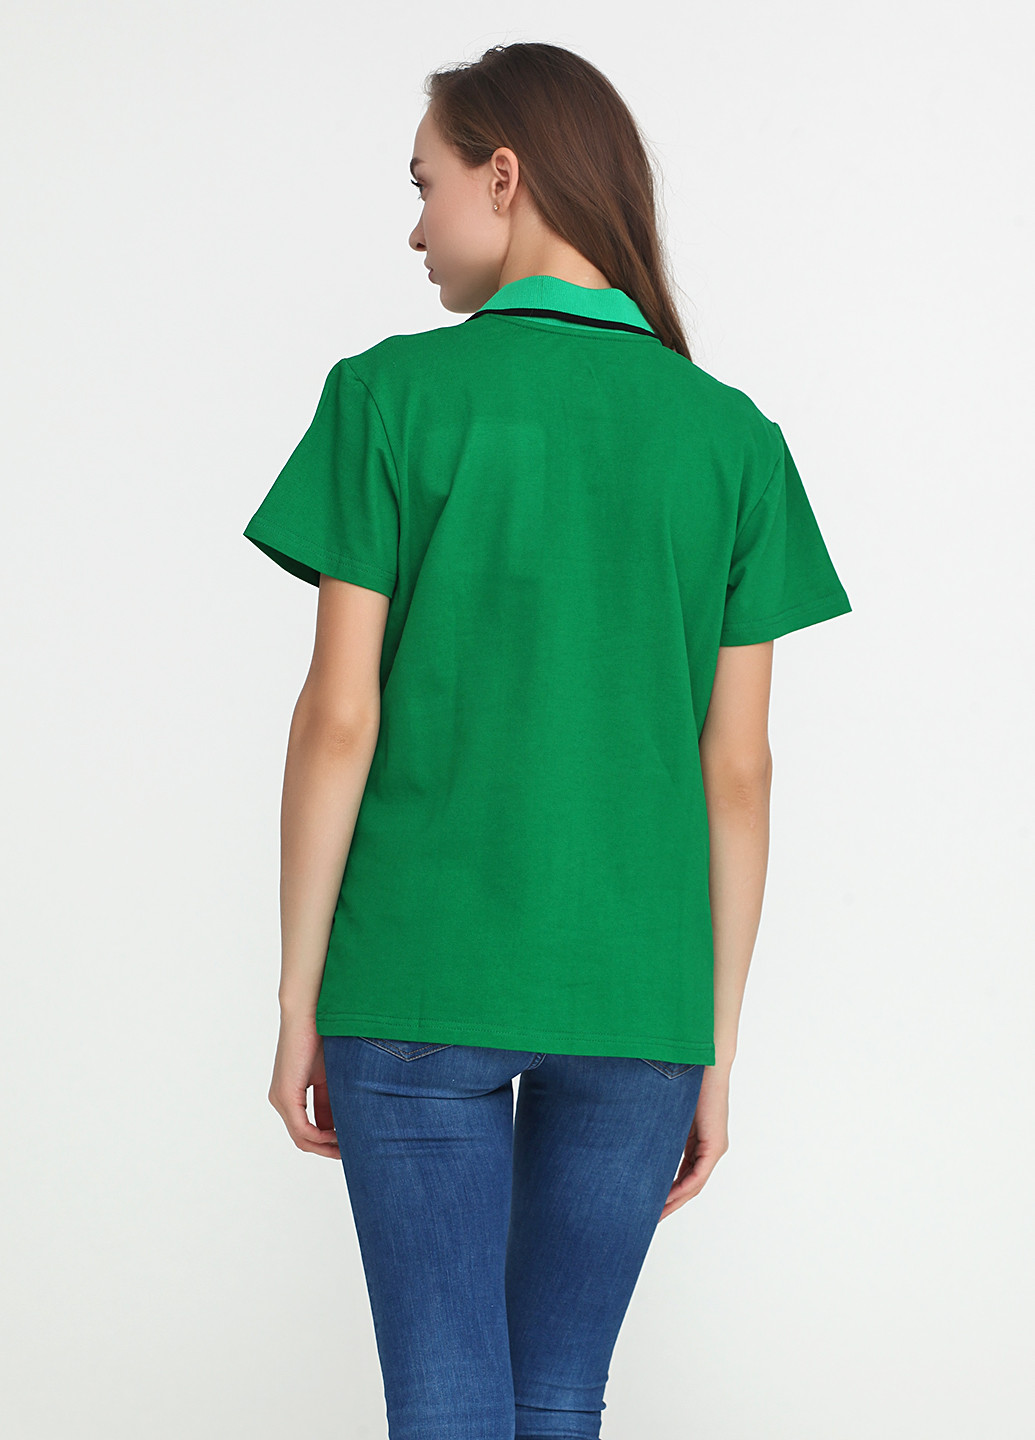 Зеленая женская футболка-поло Tryapos с рисунком